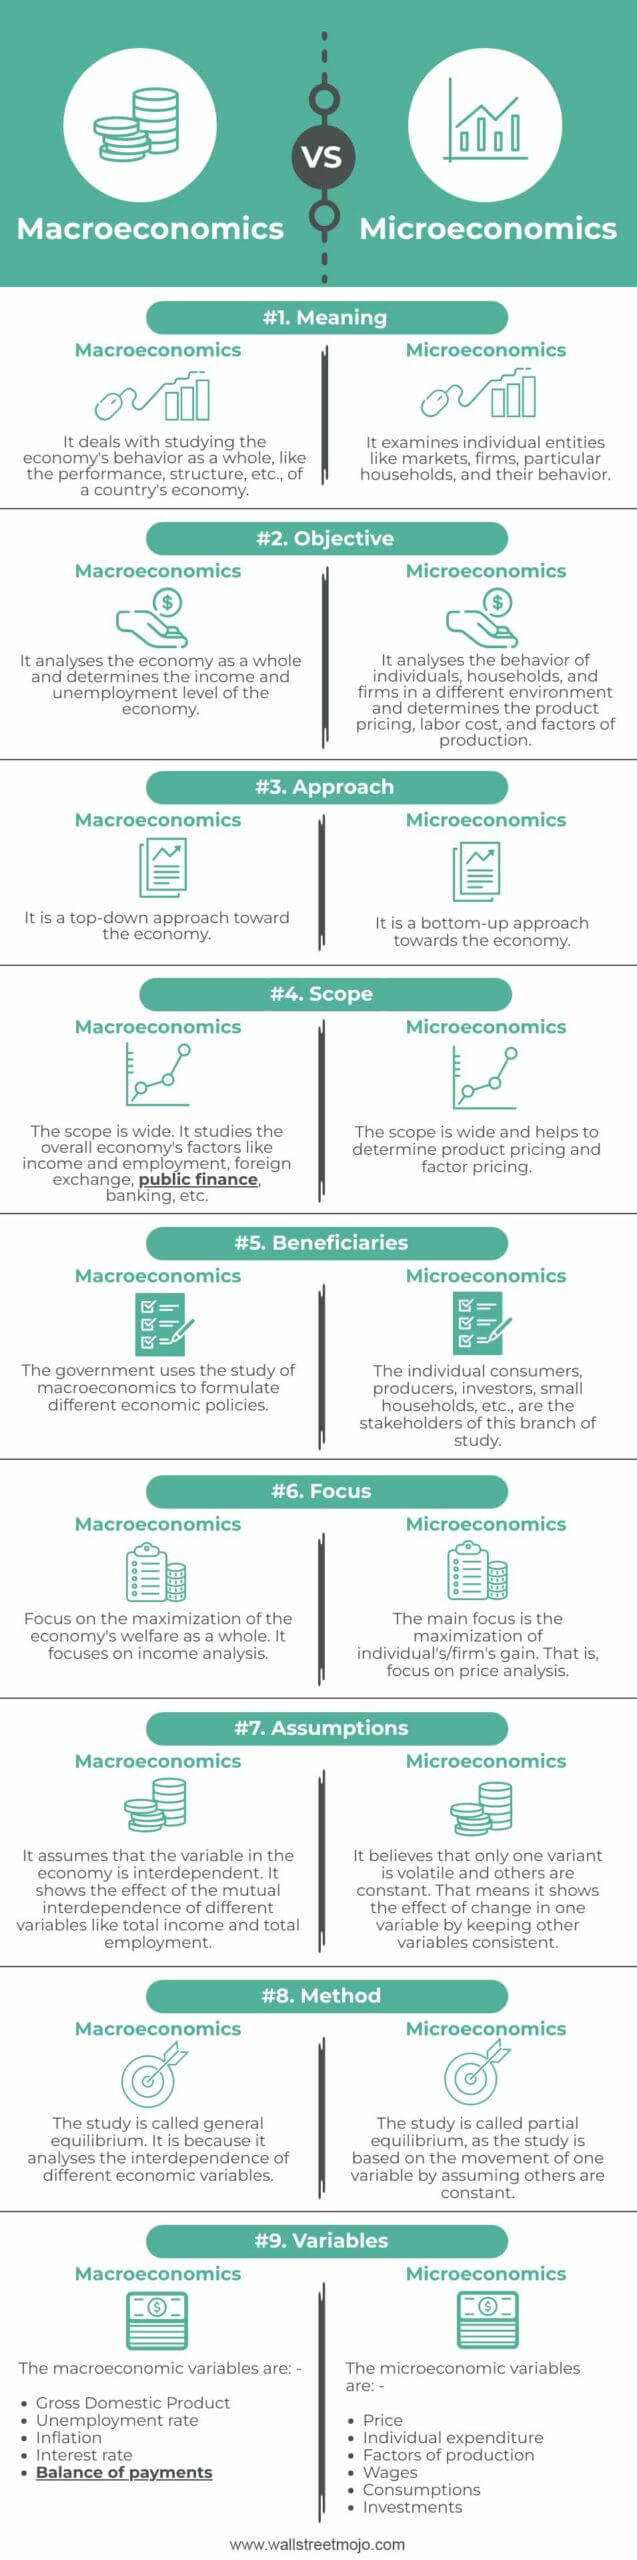 Macroeconomics-vs-Microeconomics-info